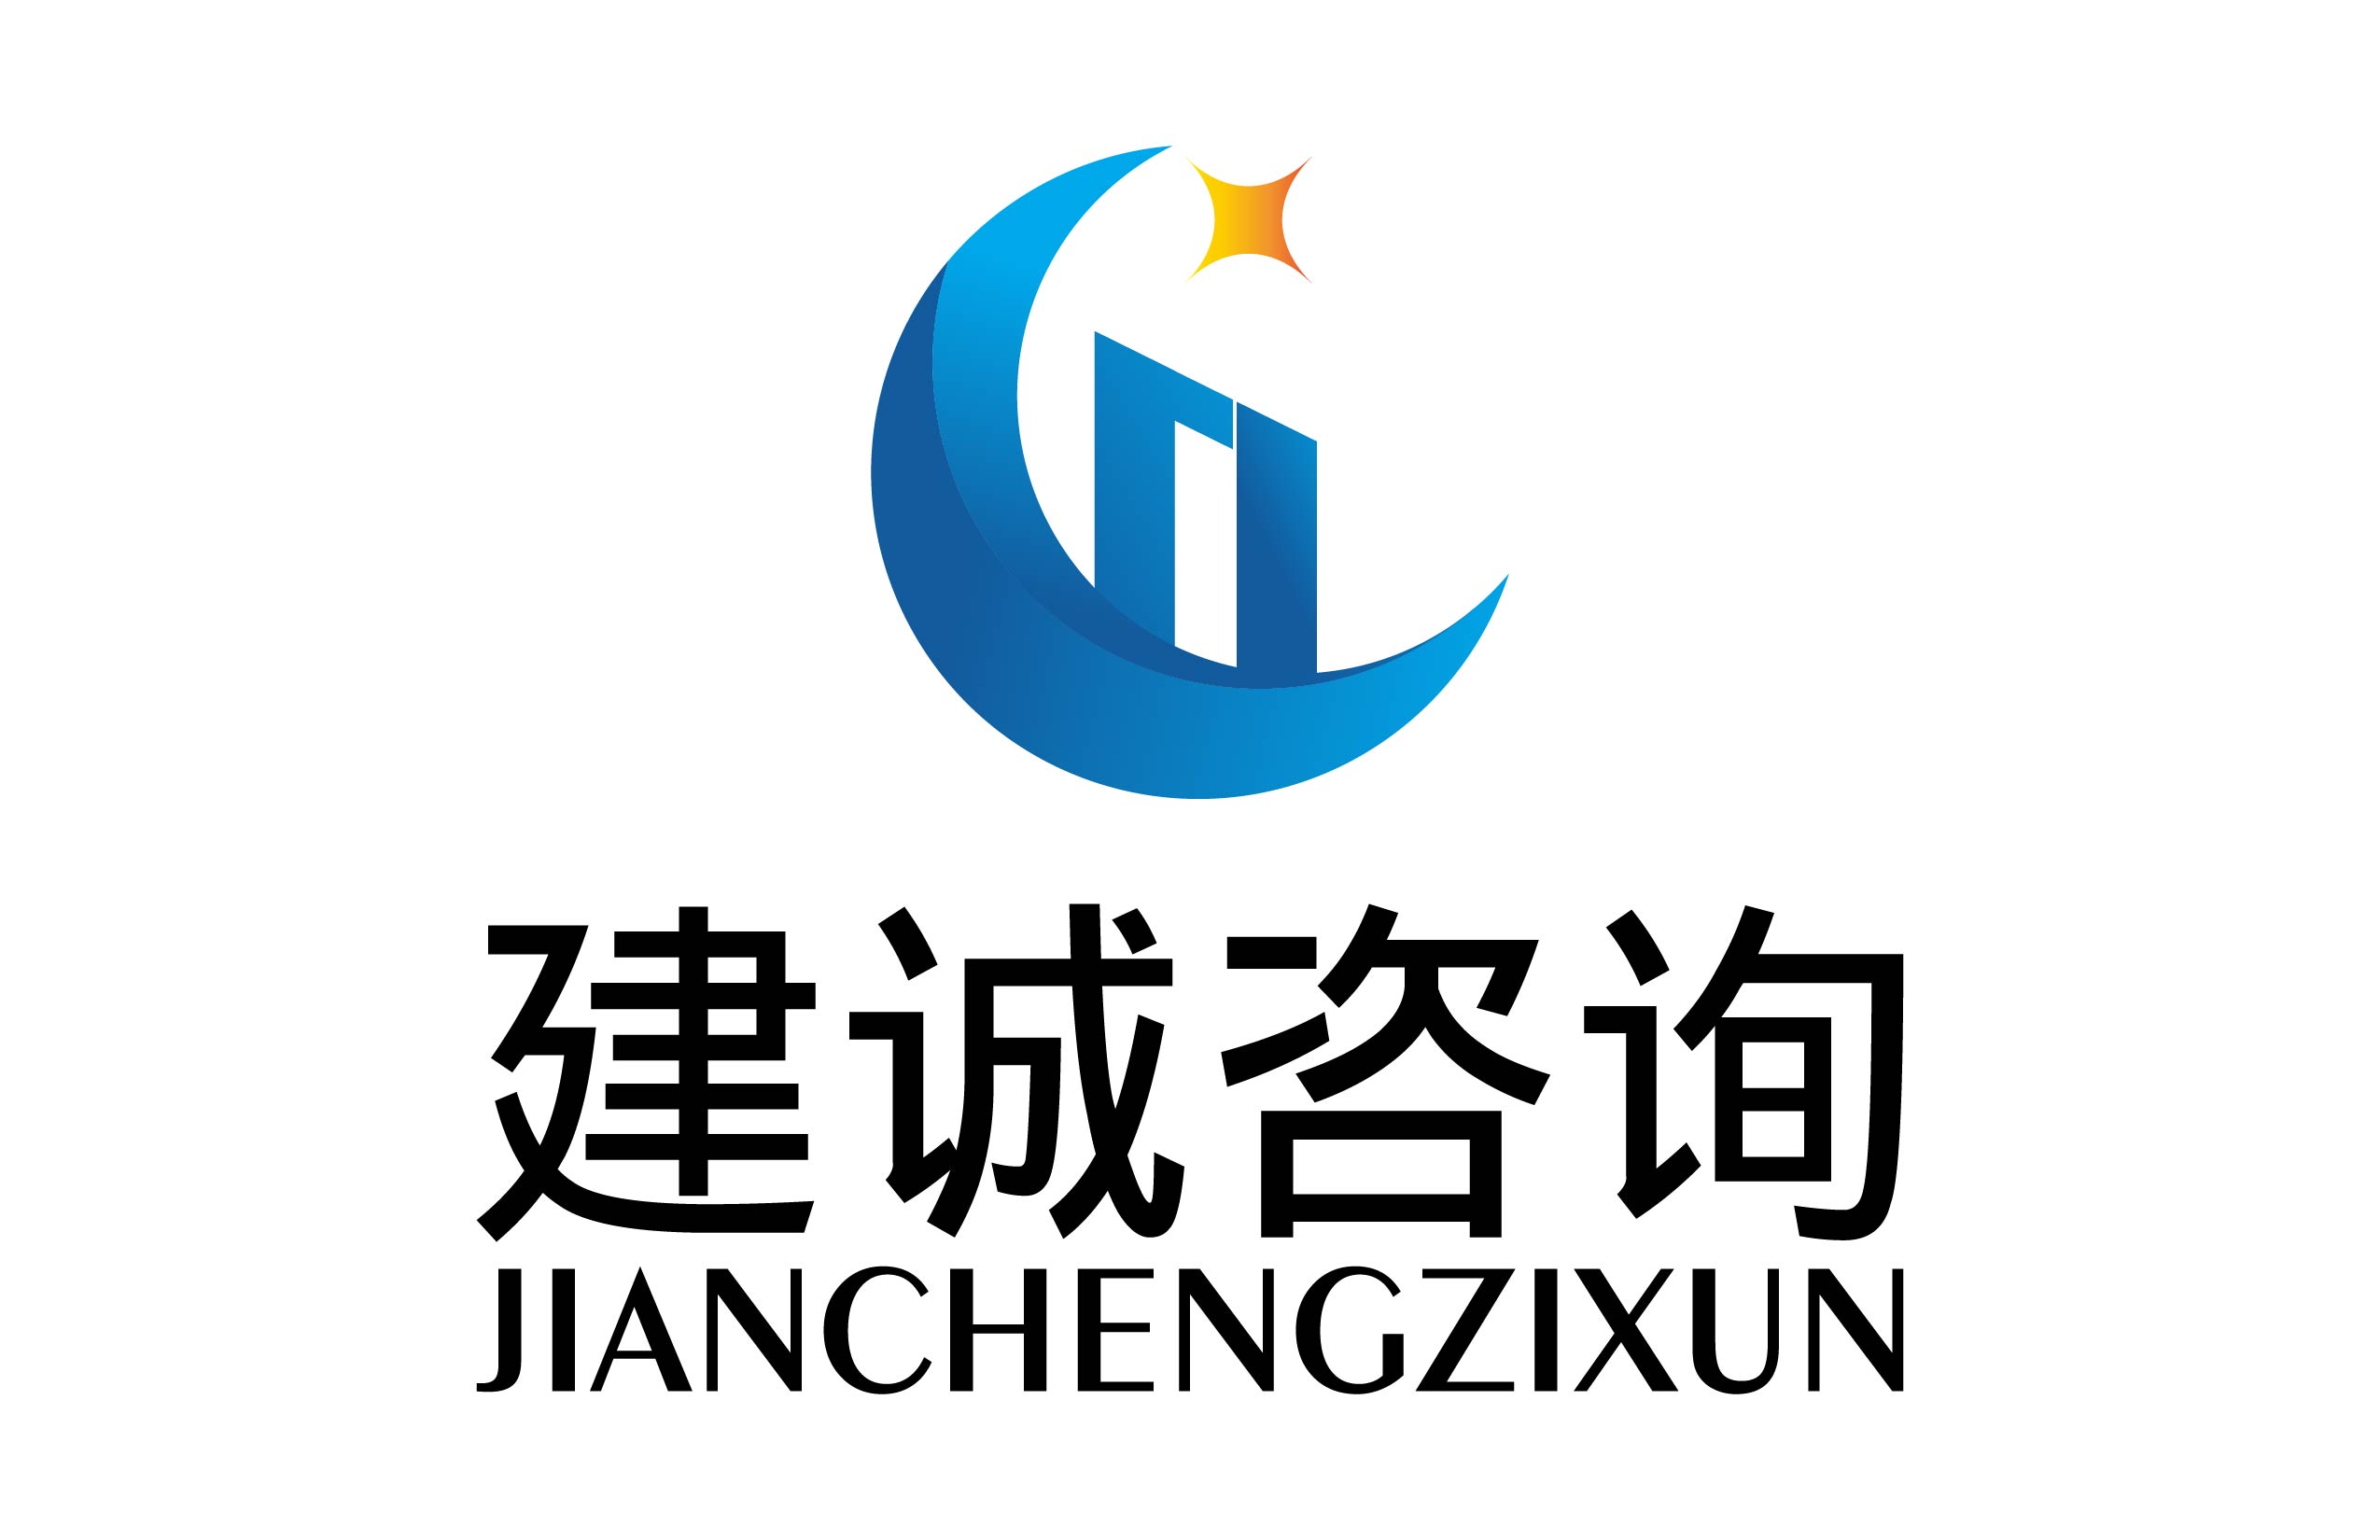 惠州市建诚信息咨询有限公司 logo